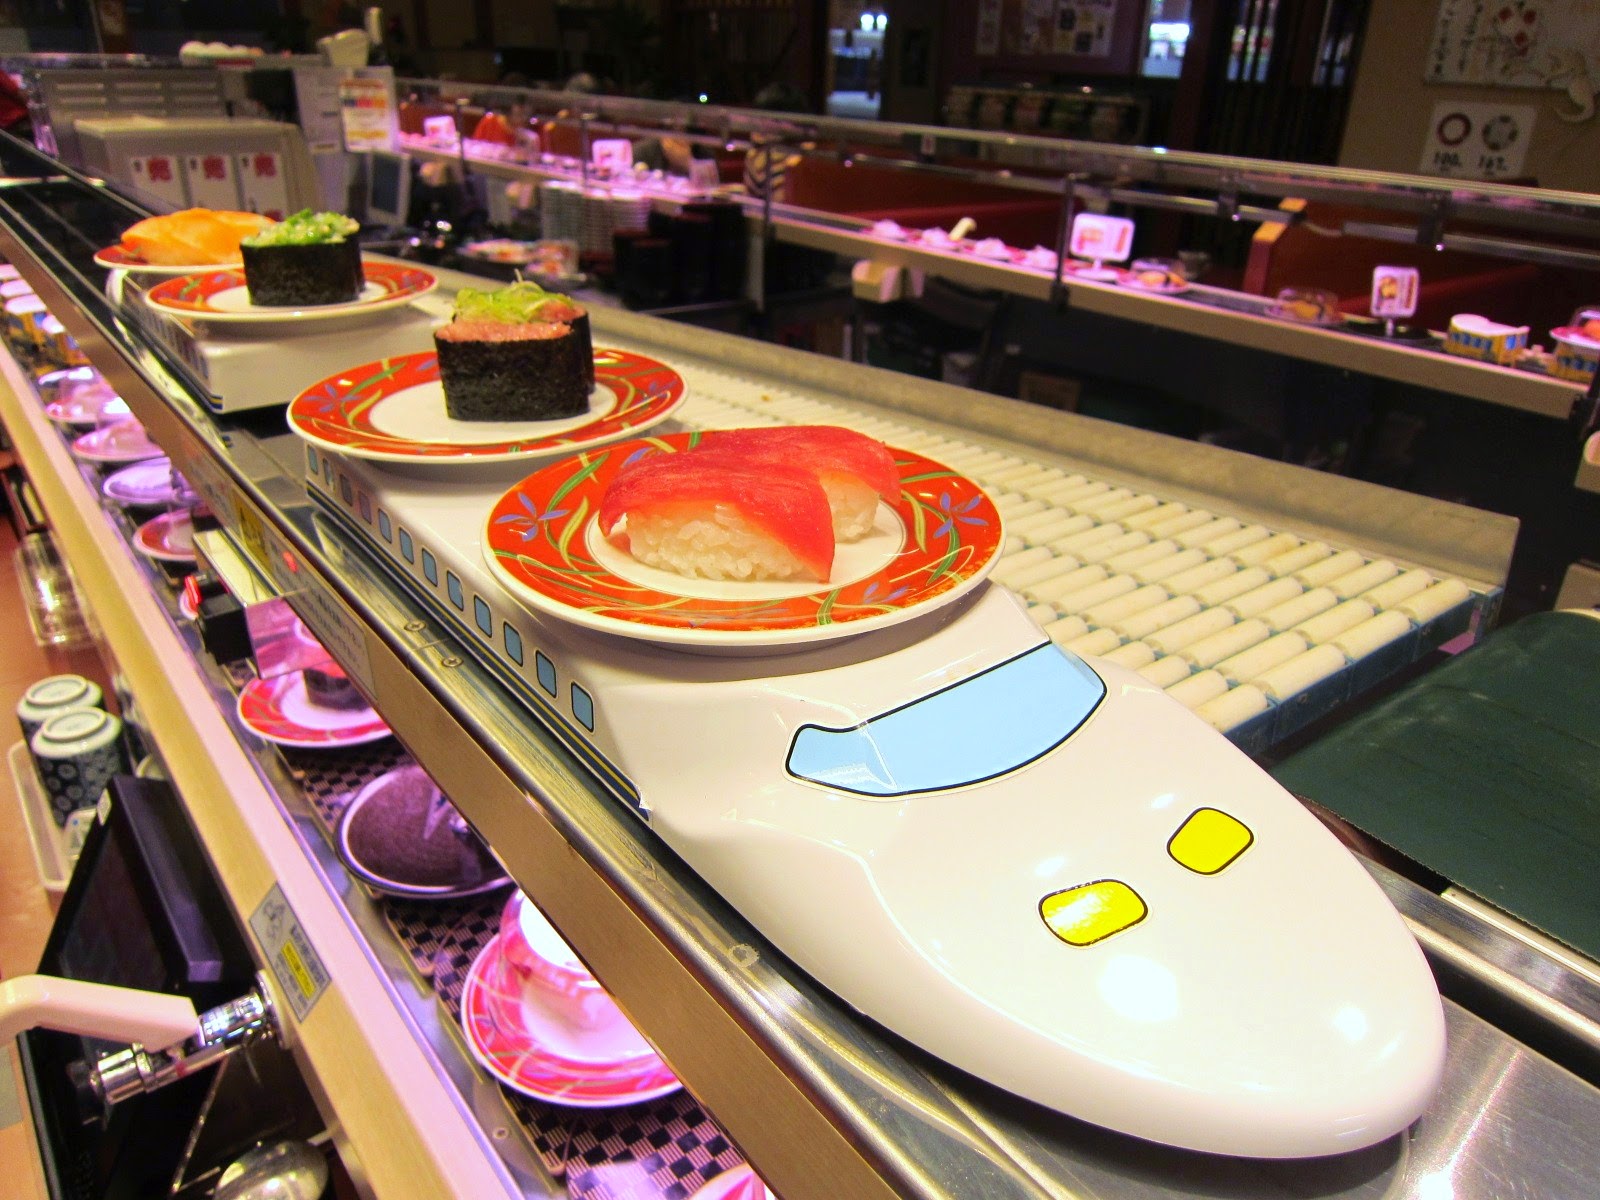 Yusuke Japan Blog: Very fun way to eat sushi!